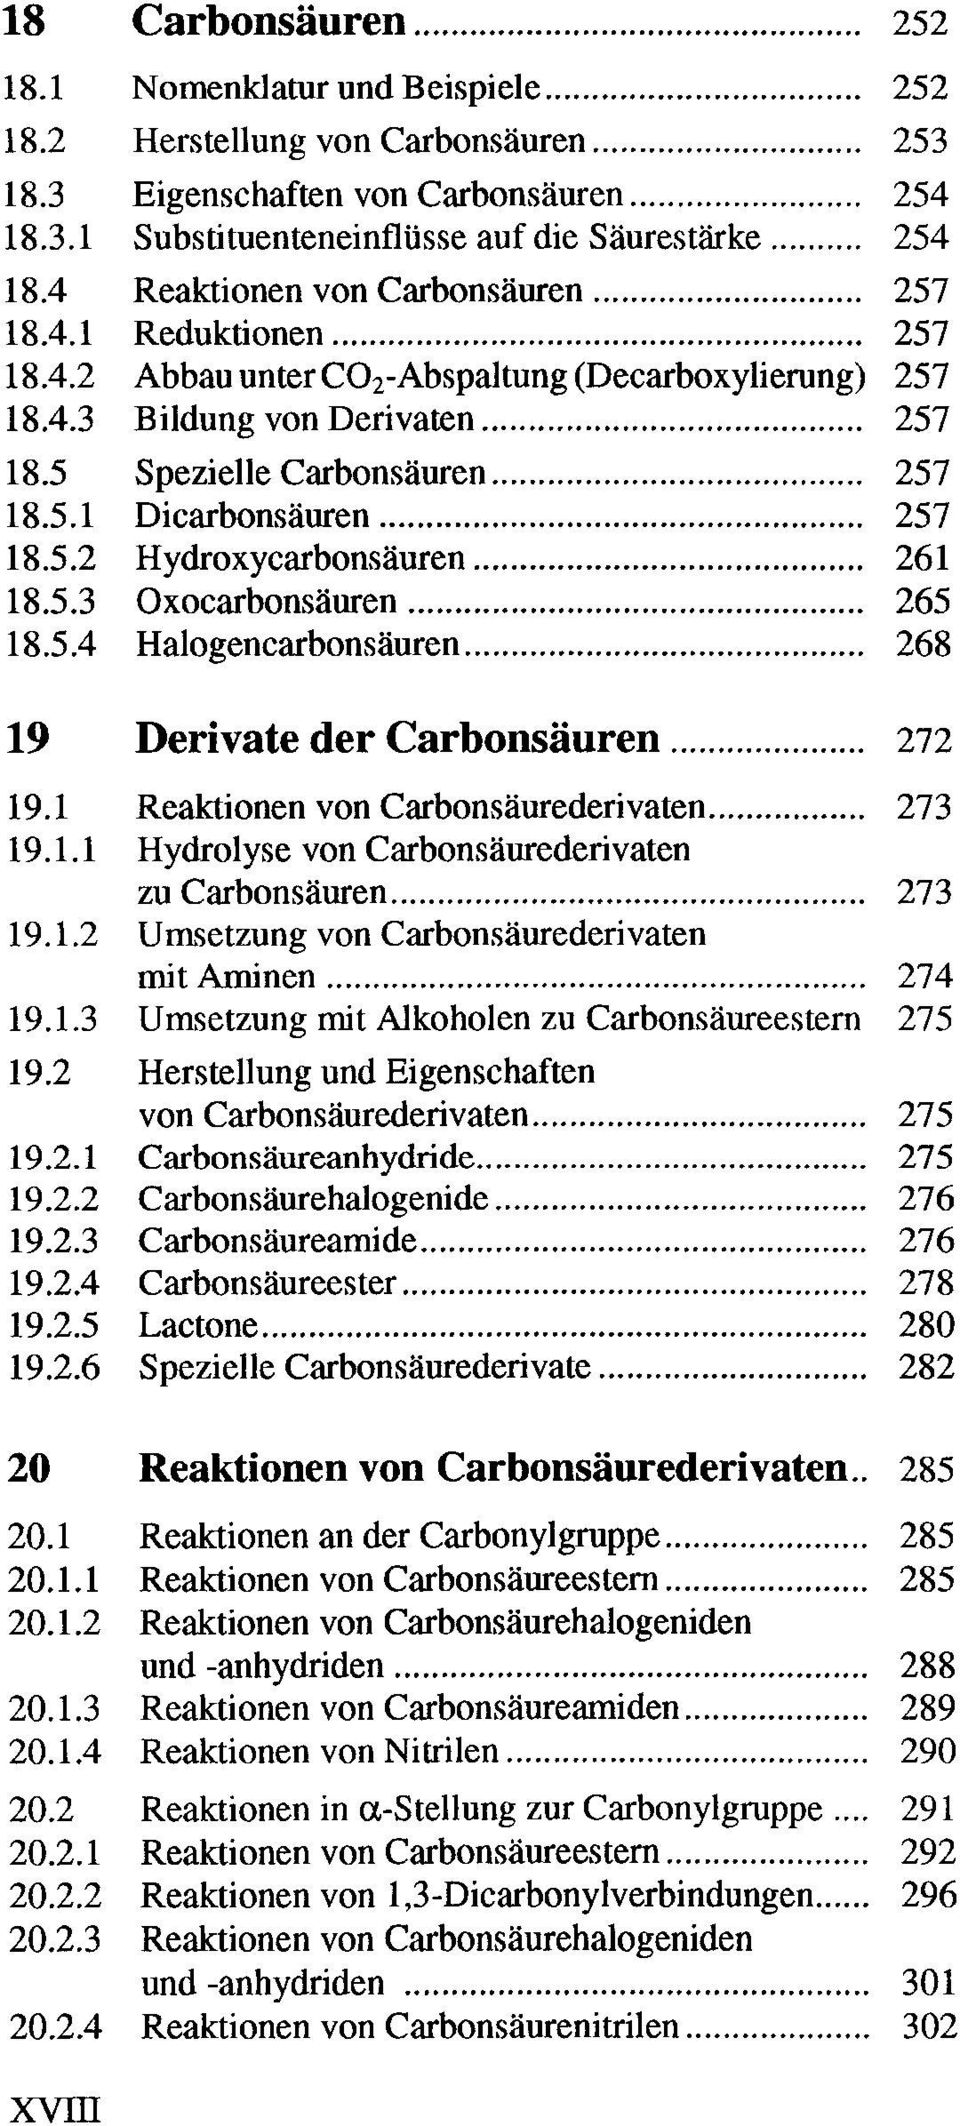 ..... 257 Abbau untercorabspaltung (Decarboxylierung) 257 Bildung von Derivaten... 257 Spezielle Carbonsäuren....... 257 Dicarbonsäuren.............. 257 Hydroxycarbonsäuren... 261 Oxocarbonsäuren.